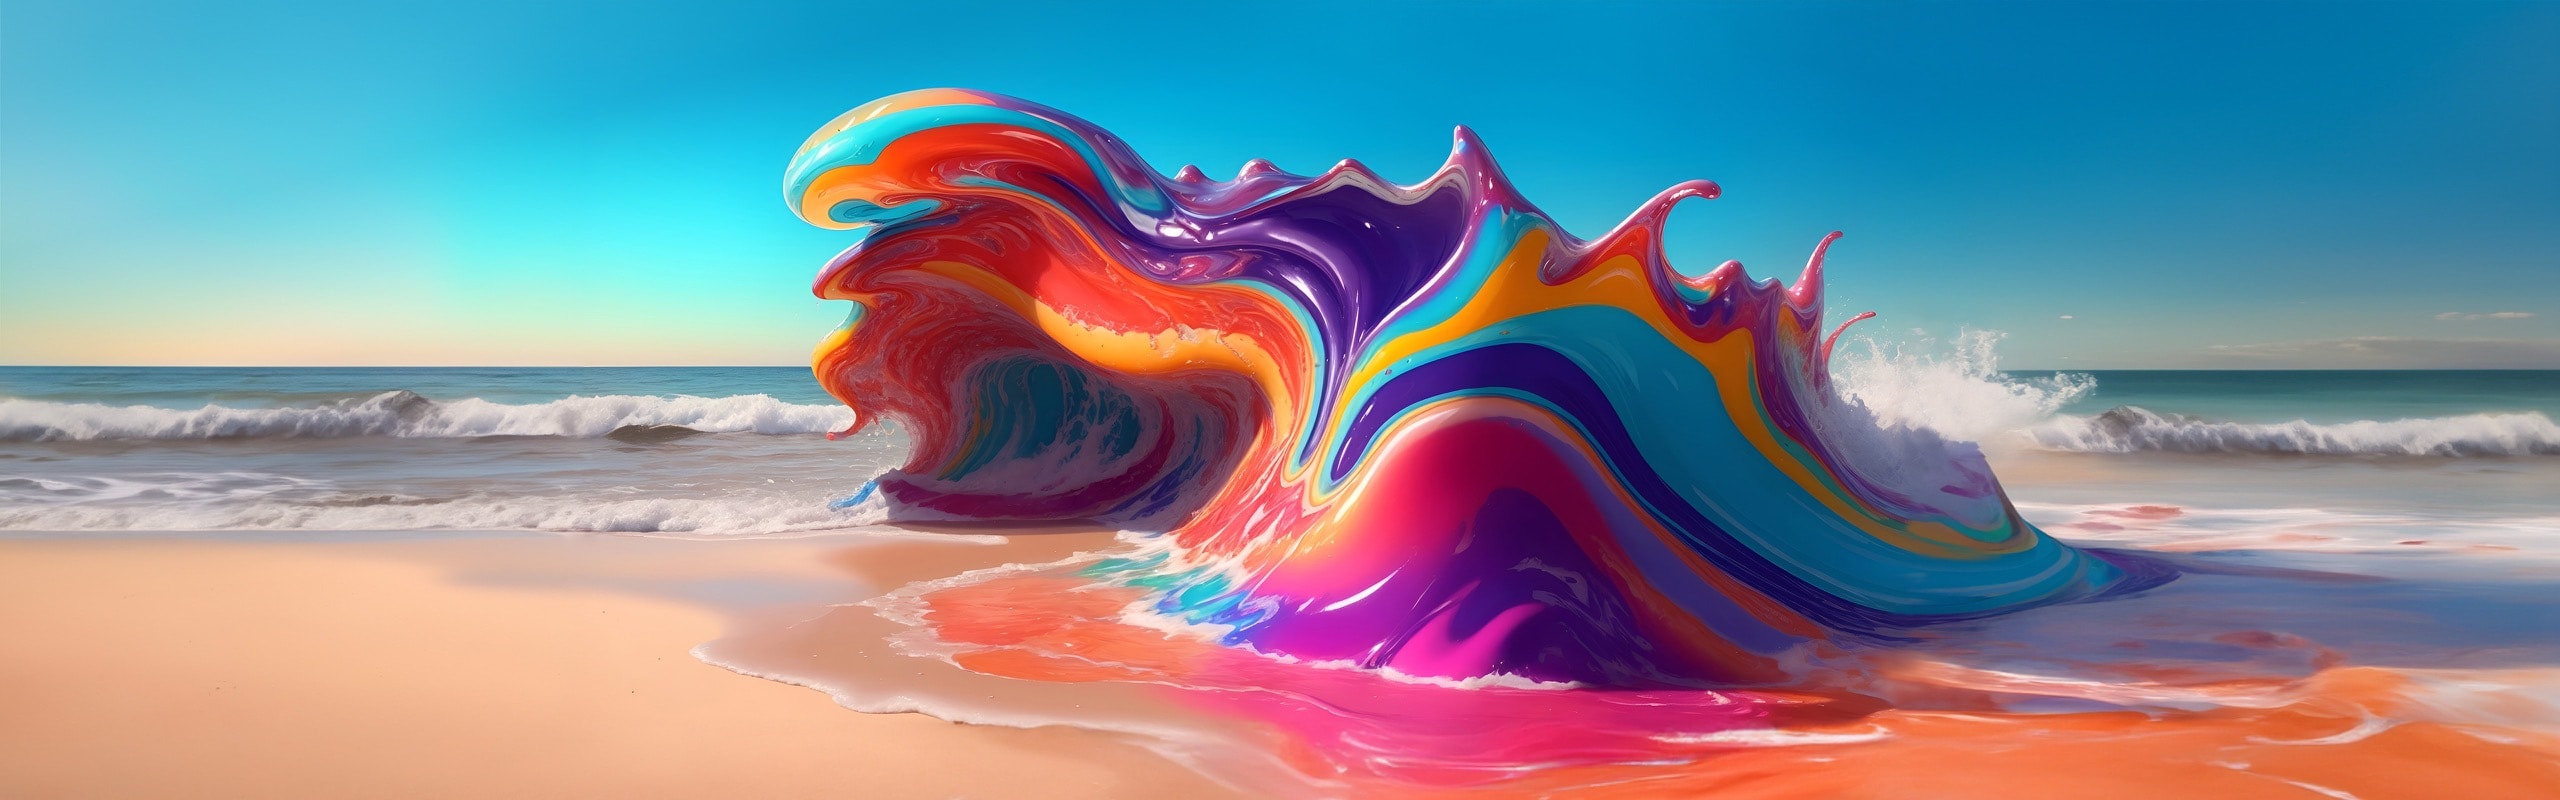 彩虹色的 3D 藝術作品，主視覺的形狀像海灘上的巨大波浪。